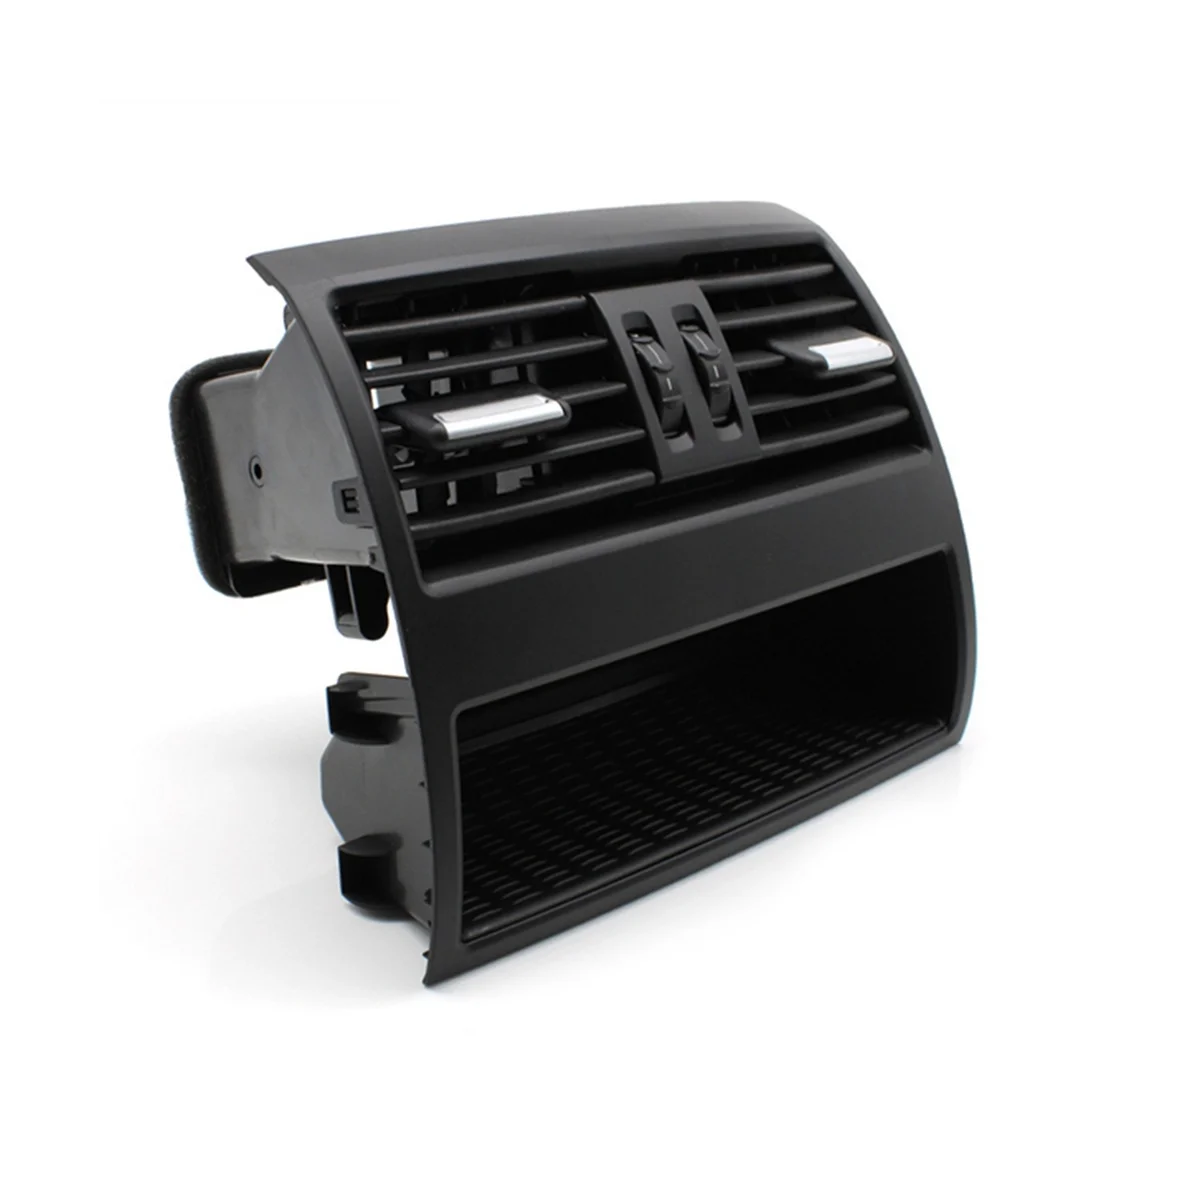 Решетка для вентиляции кондиционера на задней консоли для притока свежего воздуха Compele Часть для BMW 5 серии F10 F11 64229172167 (черный)